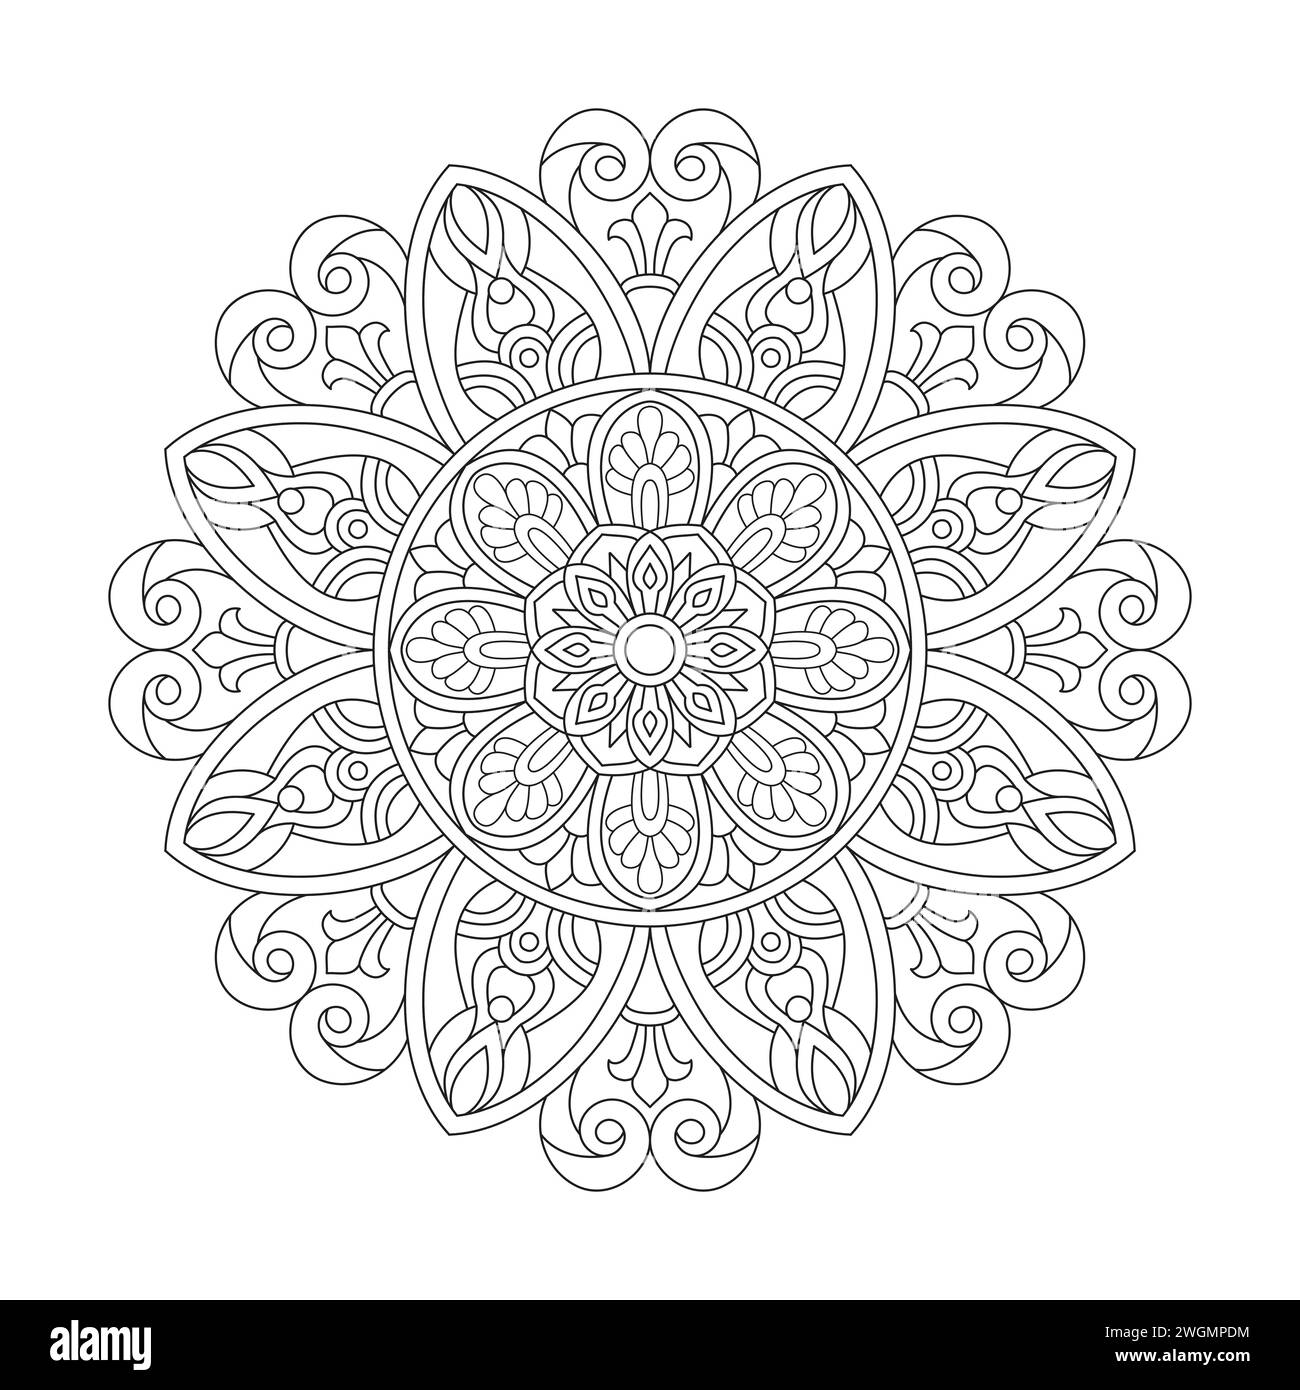 Intricata pagina di libri coloranti Mandala floreale per interno libro KDP. Petali tranquilli, capacità di rilassarsi, esperienze cerebrali, Haven armonioso, po pacifico Illustrazione Vettoriale